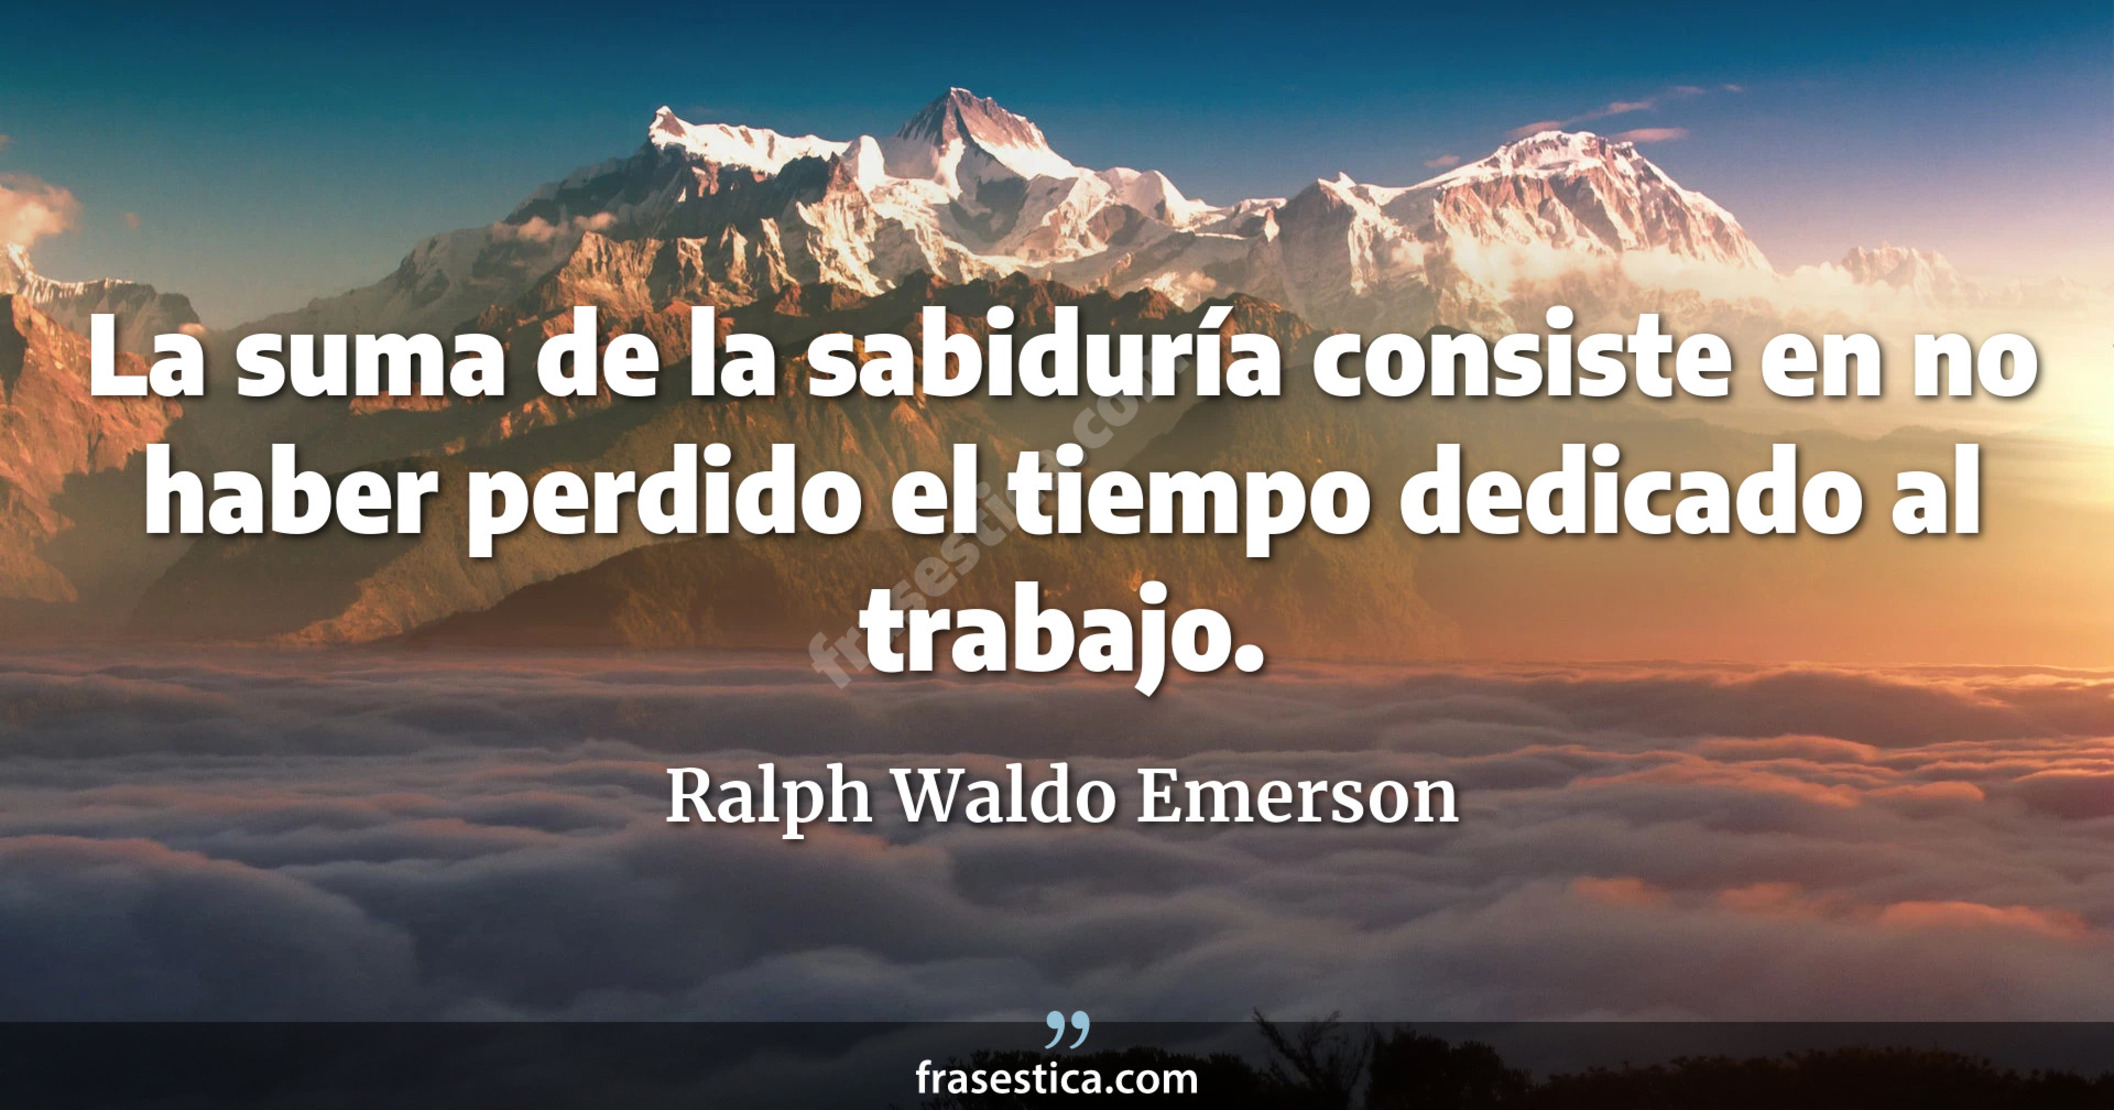 La suma de la sabiduría consiste en no haber perdido el tiempo dedicado al trabajo. - Ralph Waldo Emerson